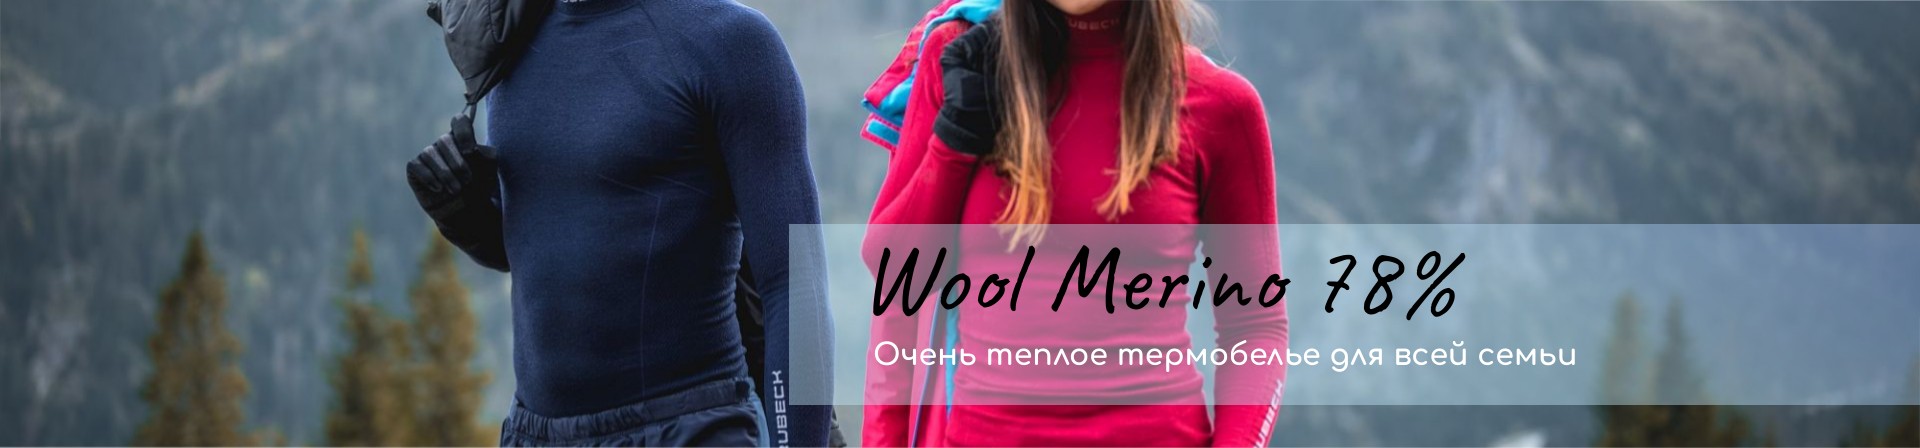 Коллекция Wool Merino 78% шерсти мериноса